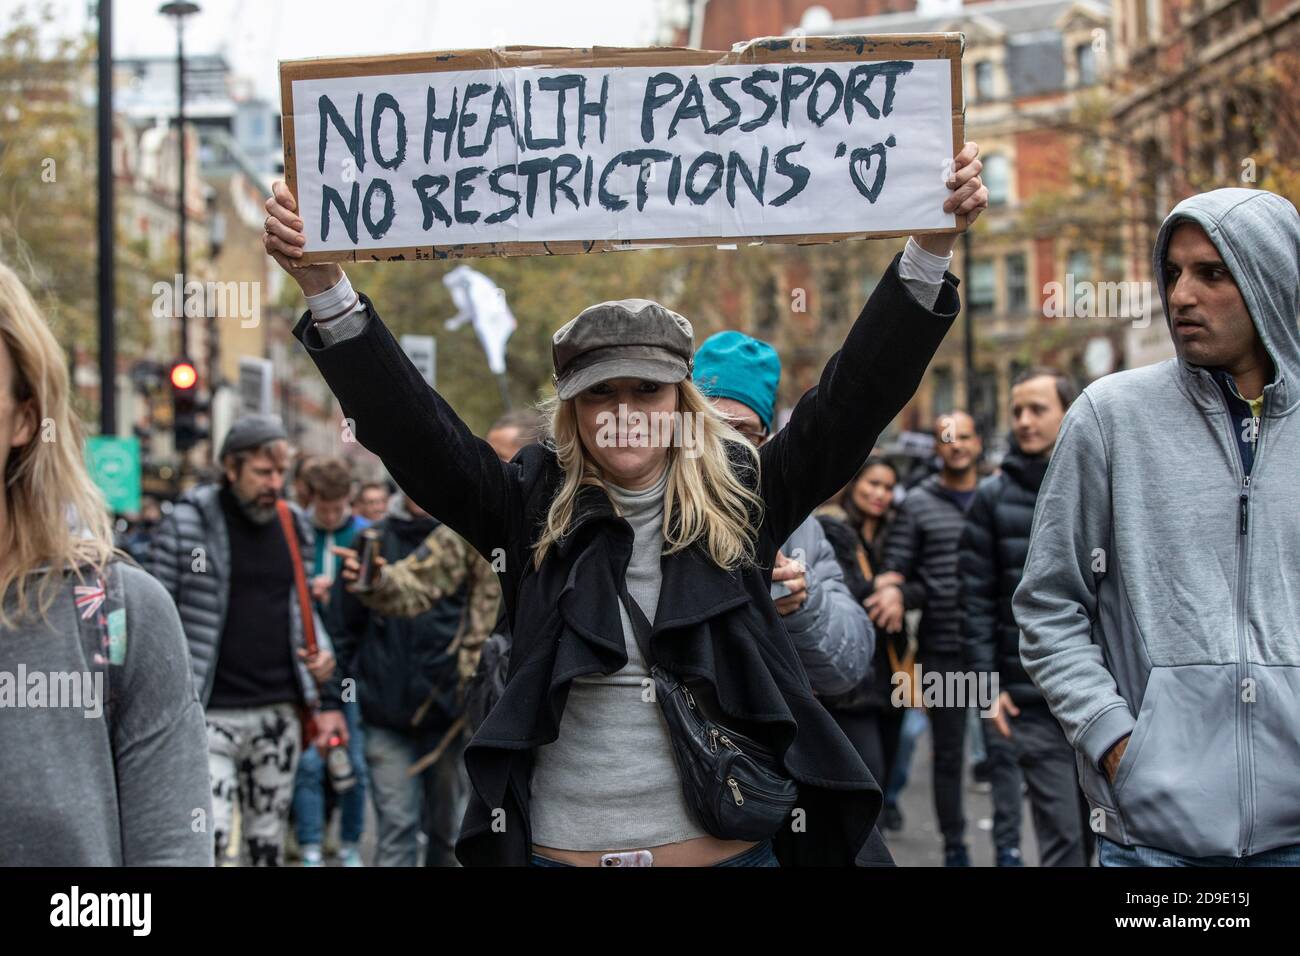 Anti-Lockdown-Protest gegen die jüngste Blockierung der Coronavirus-Pandemie durch die britische Regierung, um die Ausbreitung des Virus zu verlangsamen. Stockfoto